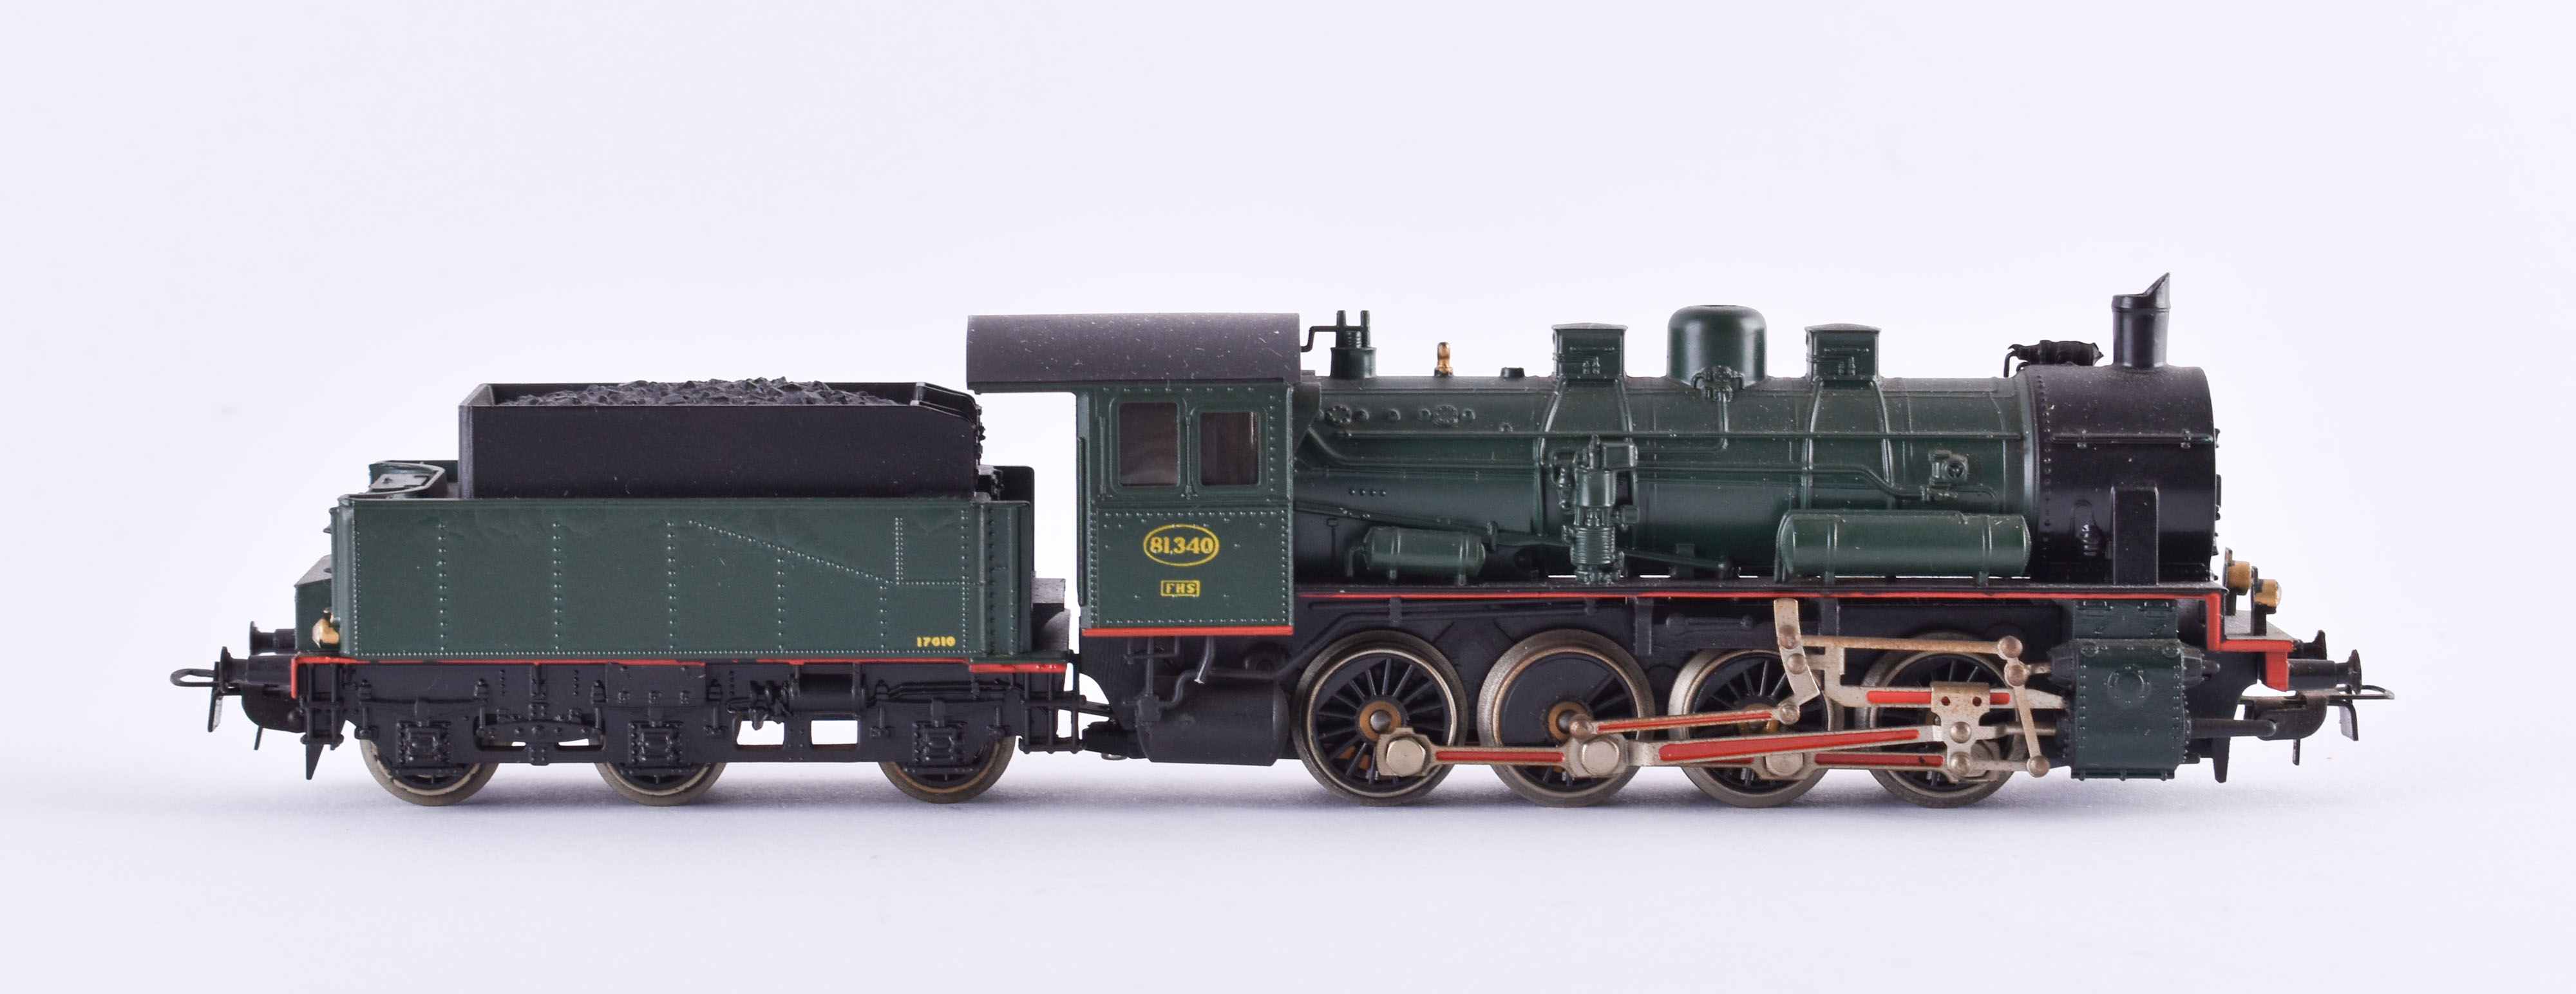 Dampflokomotive 81340 mit Tender 17610 - Märklin